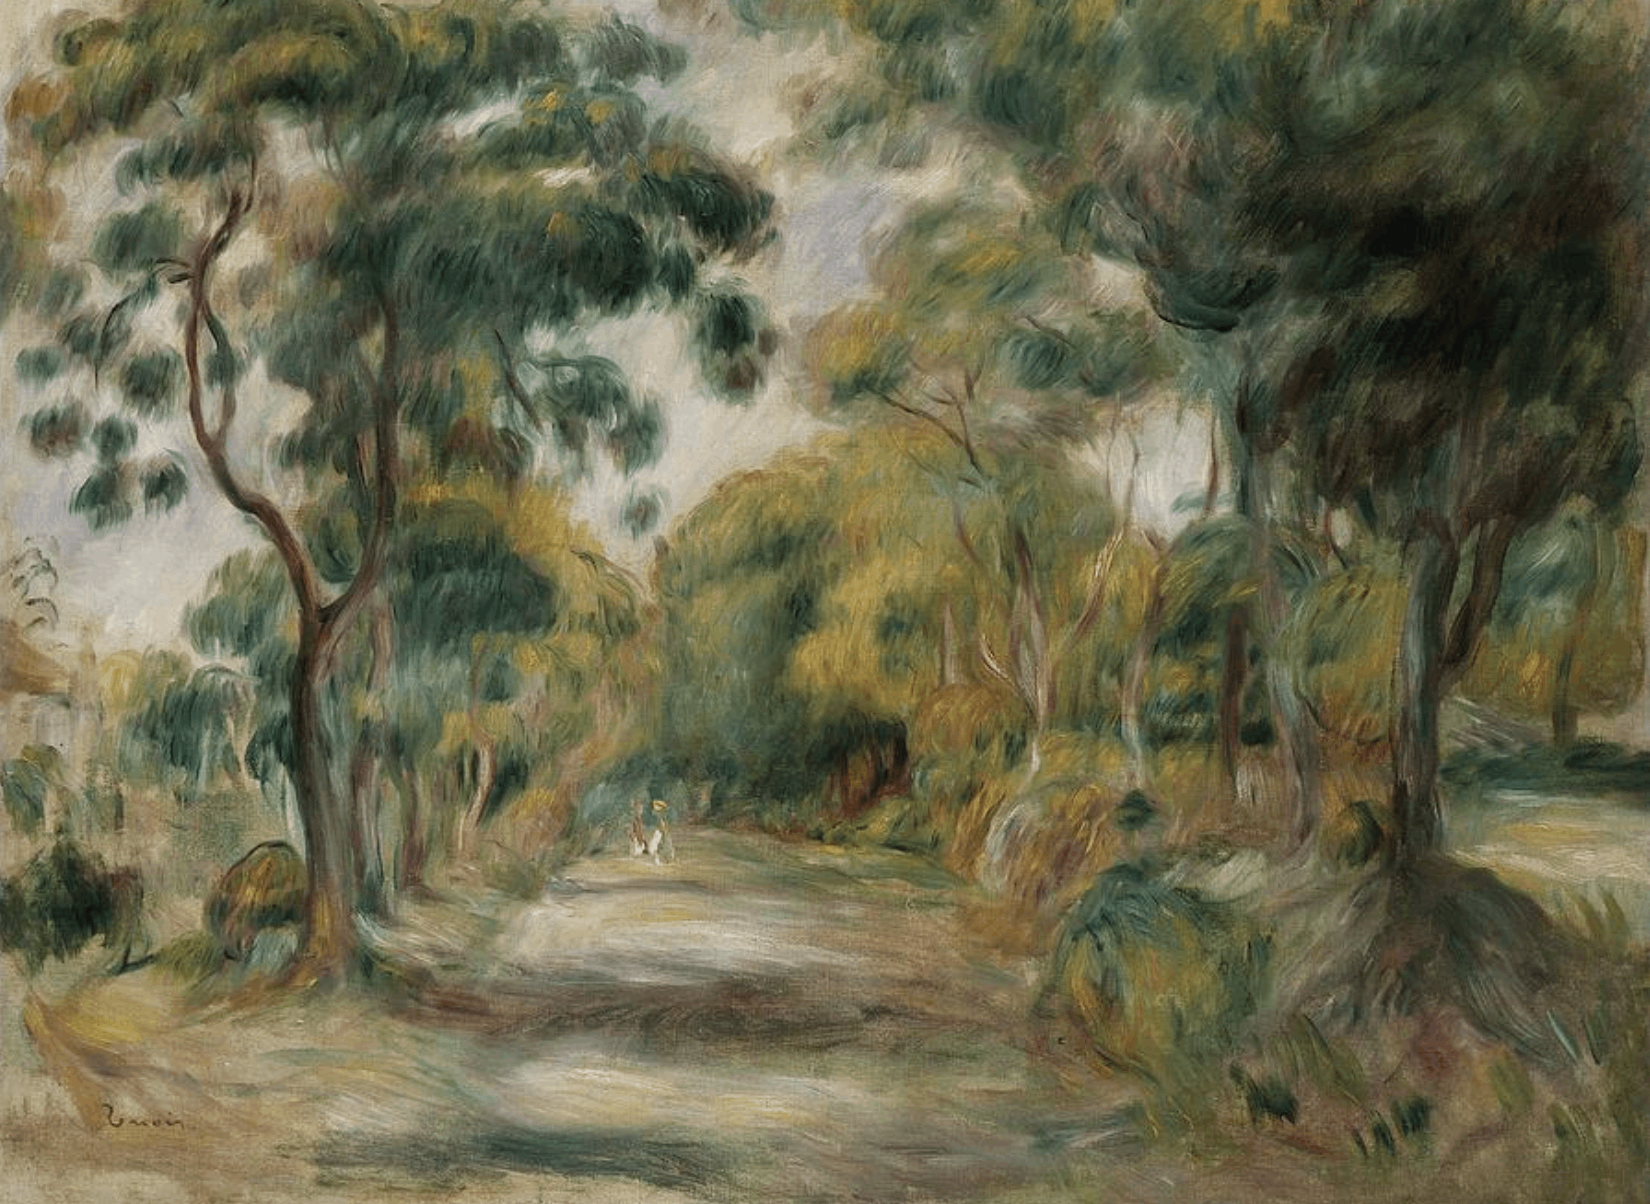 Pierre Auguste Renoir, Landscape at Noon, 1900